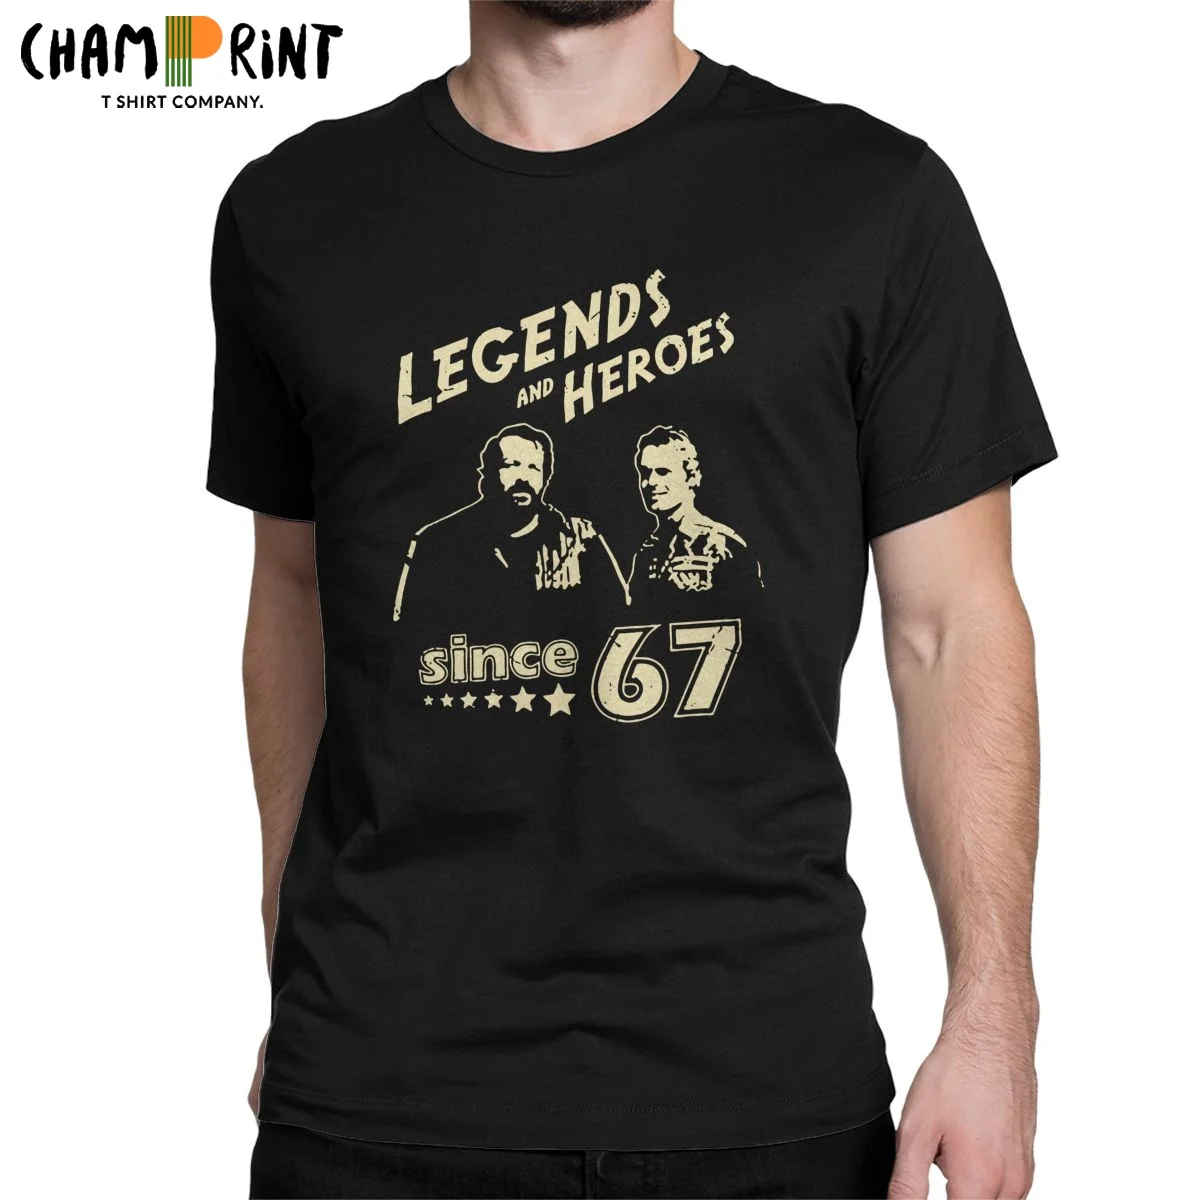 

Футболка мужская с надписью Bud Спенсера, легенды и герой с 67 лет, хлопковая одежда Terence Hill, потрясающие футболки с коротким рукавом и круглым вырезом